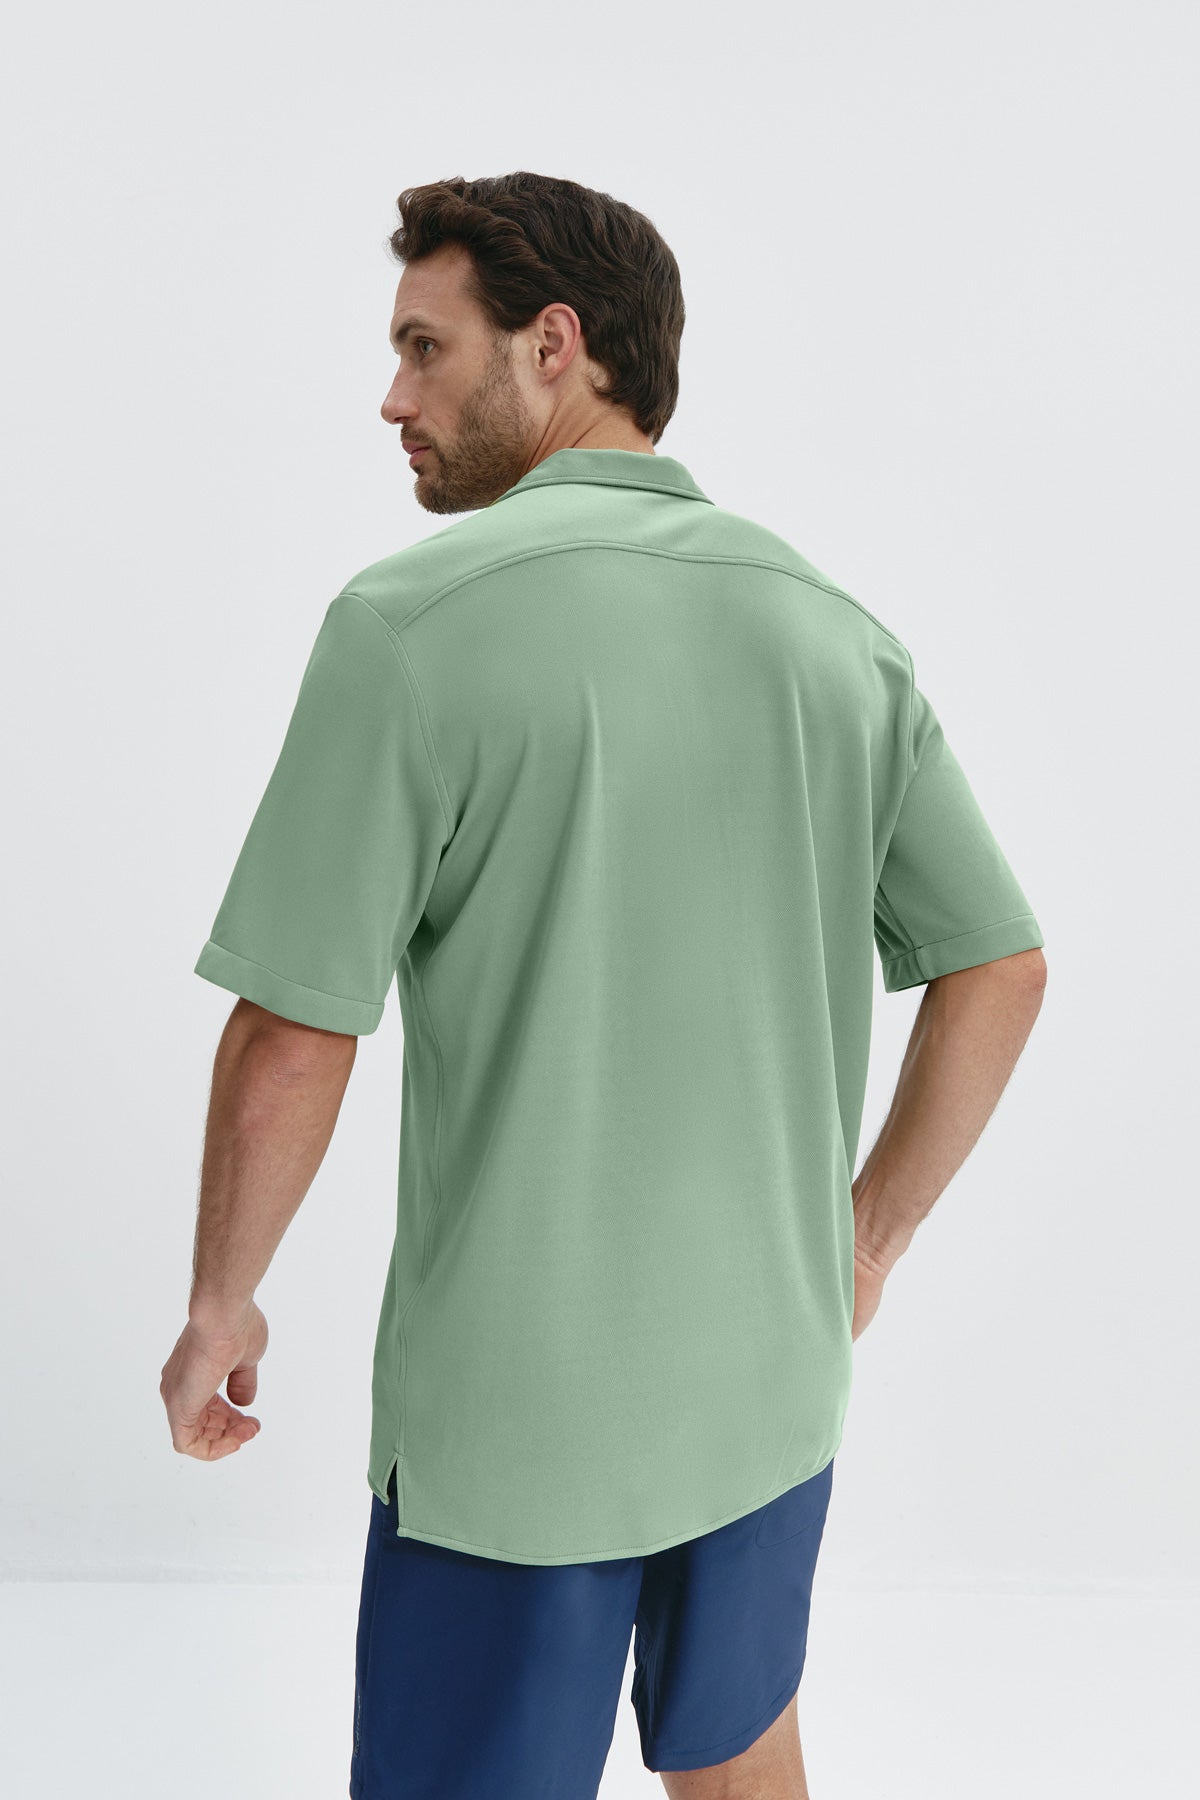 Camisa de manga corta de hombre verde Sepiia. Camisa bowling de manga corta para hombre sin plancha, sin manchas y sin olores. Hecho en España Foto espalda